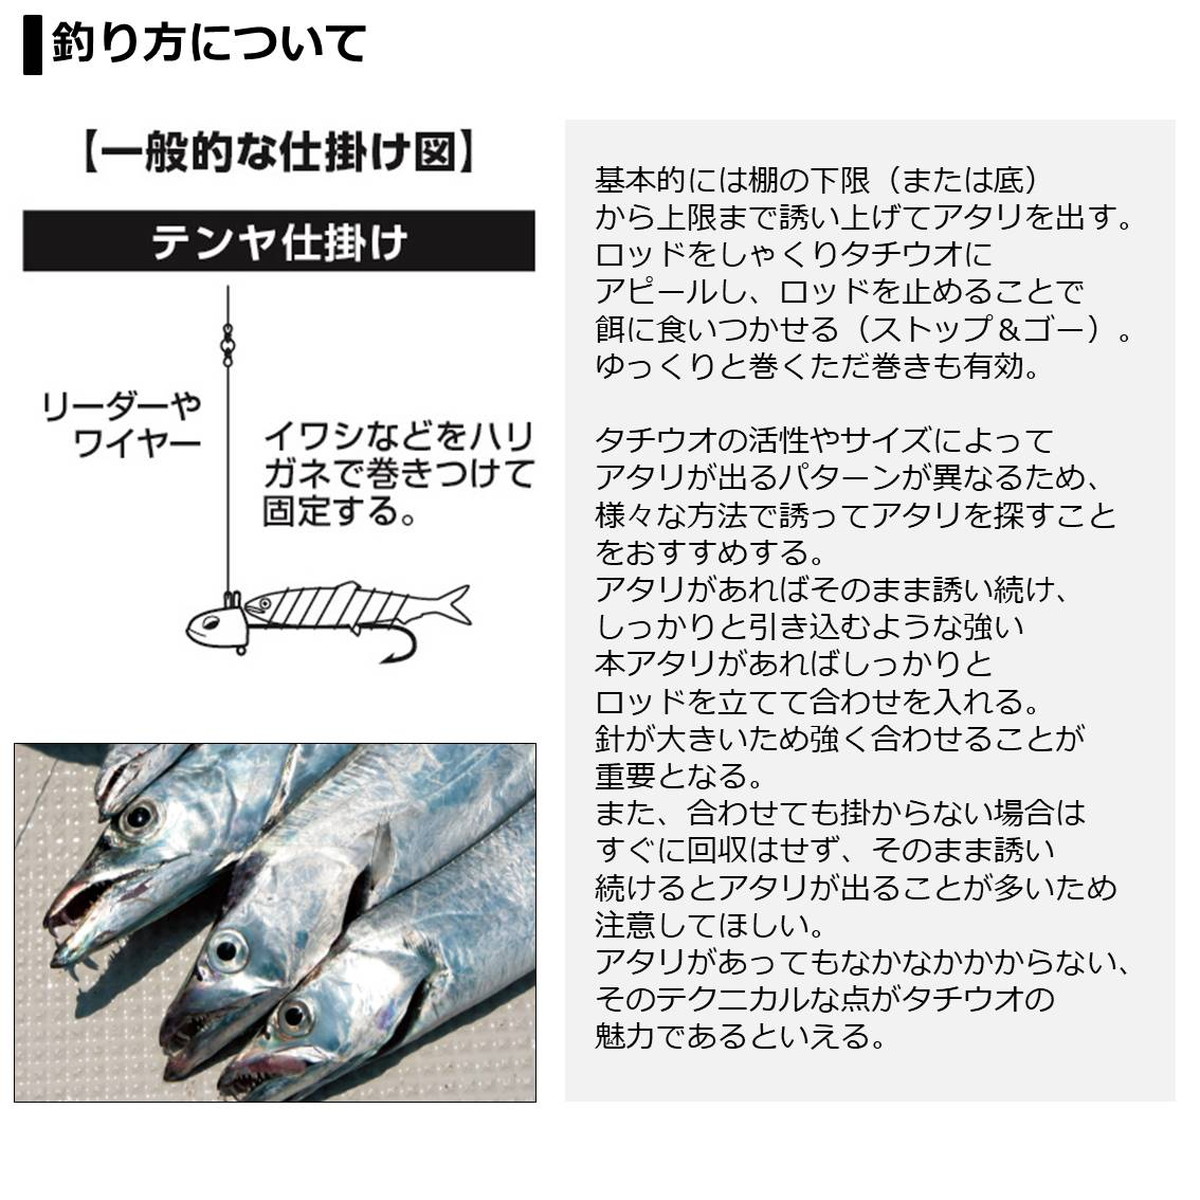 即発送可能 5 ダイワ ロッド テンヤタチウオx 180 R 年新製品 釣具のアングル 店 日本製 Corchomex Com